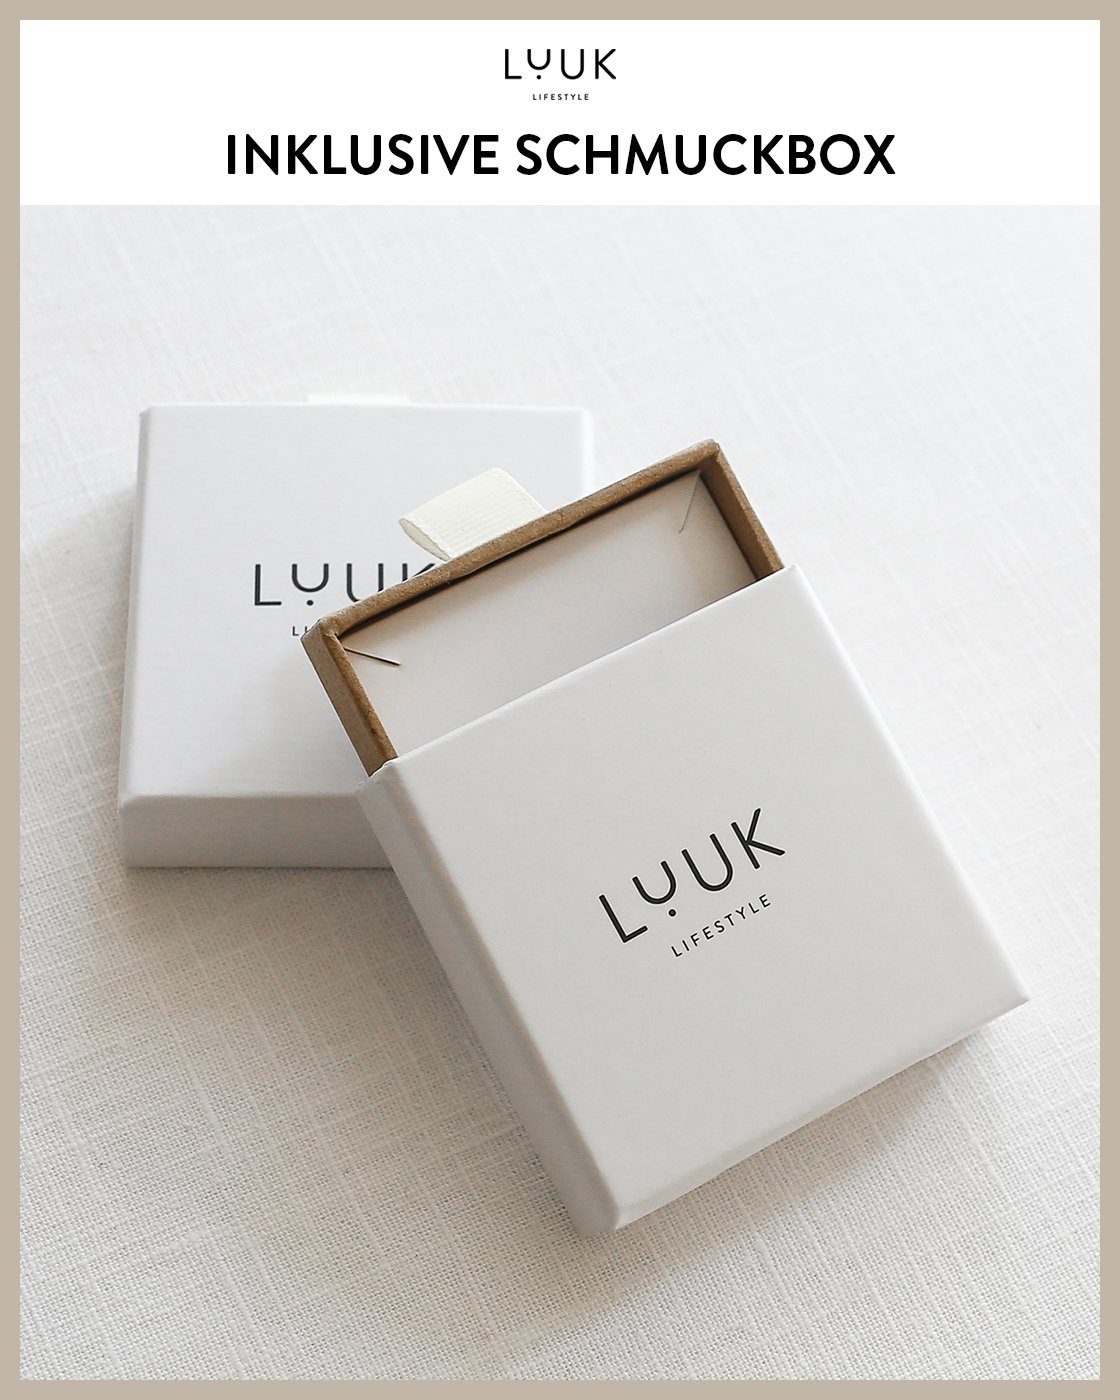 inklusive Schmuckbox LUUK alltagstauglich, Paar & Rosé LIFESTYLE modernes Ohrstecker Design, Sterne, hautverträglich, wasserfest schöner